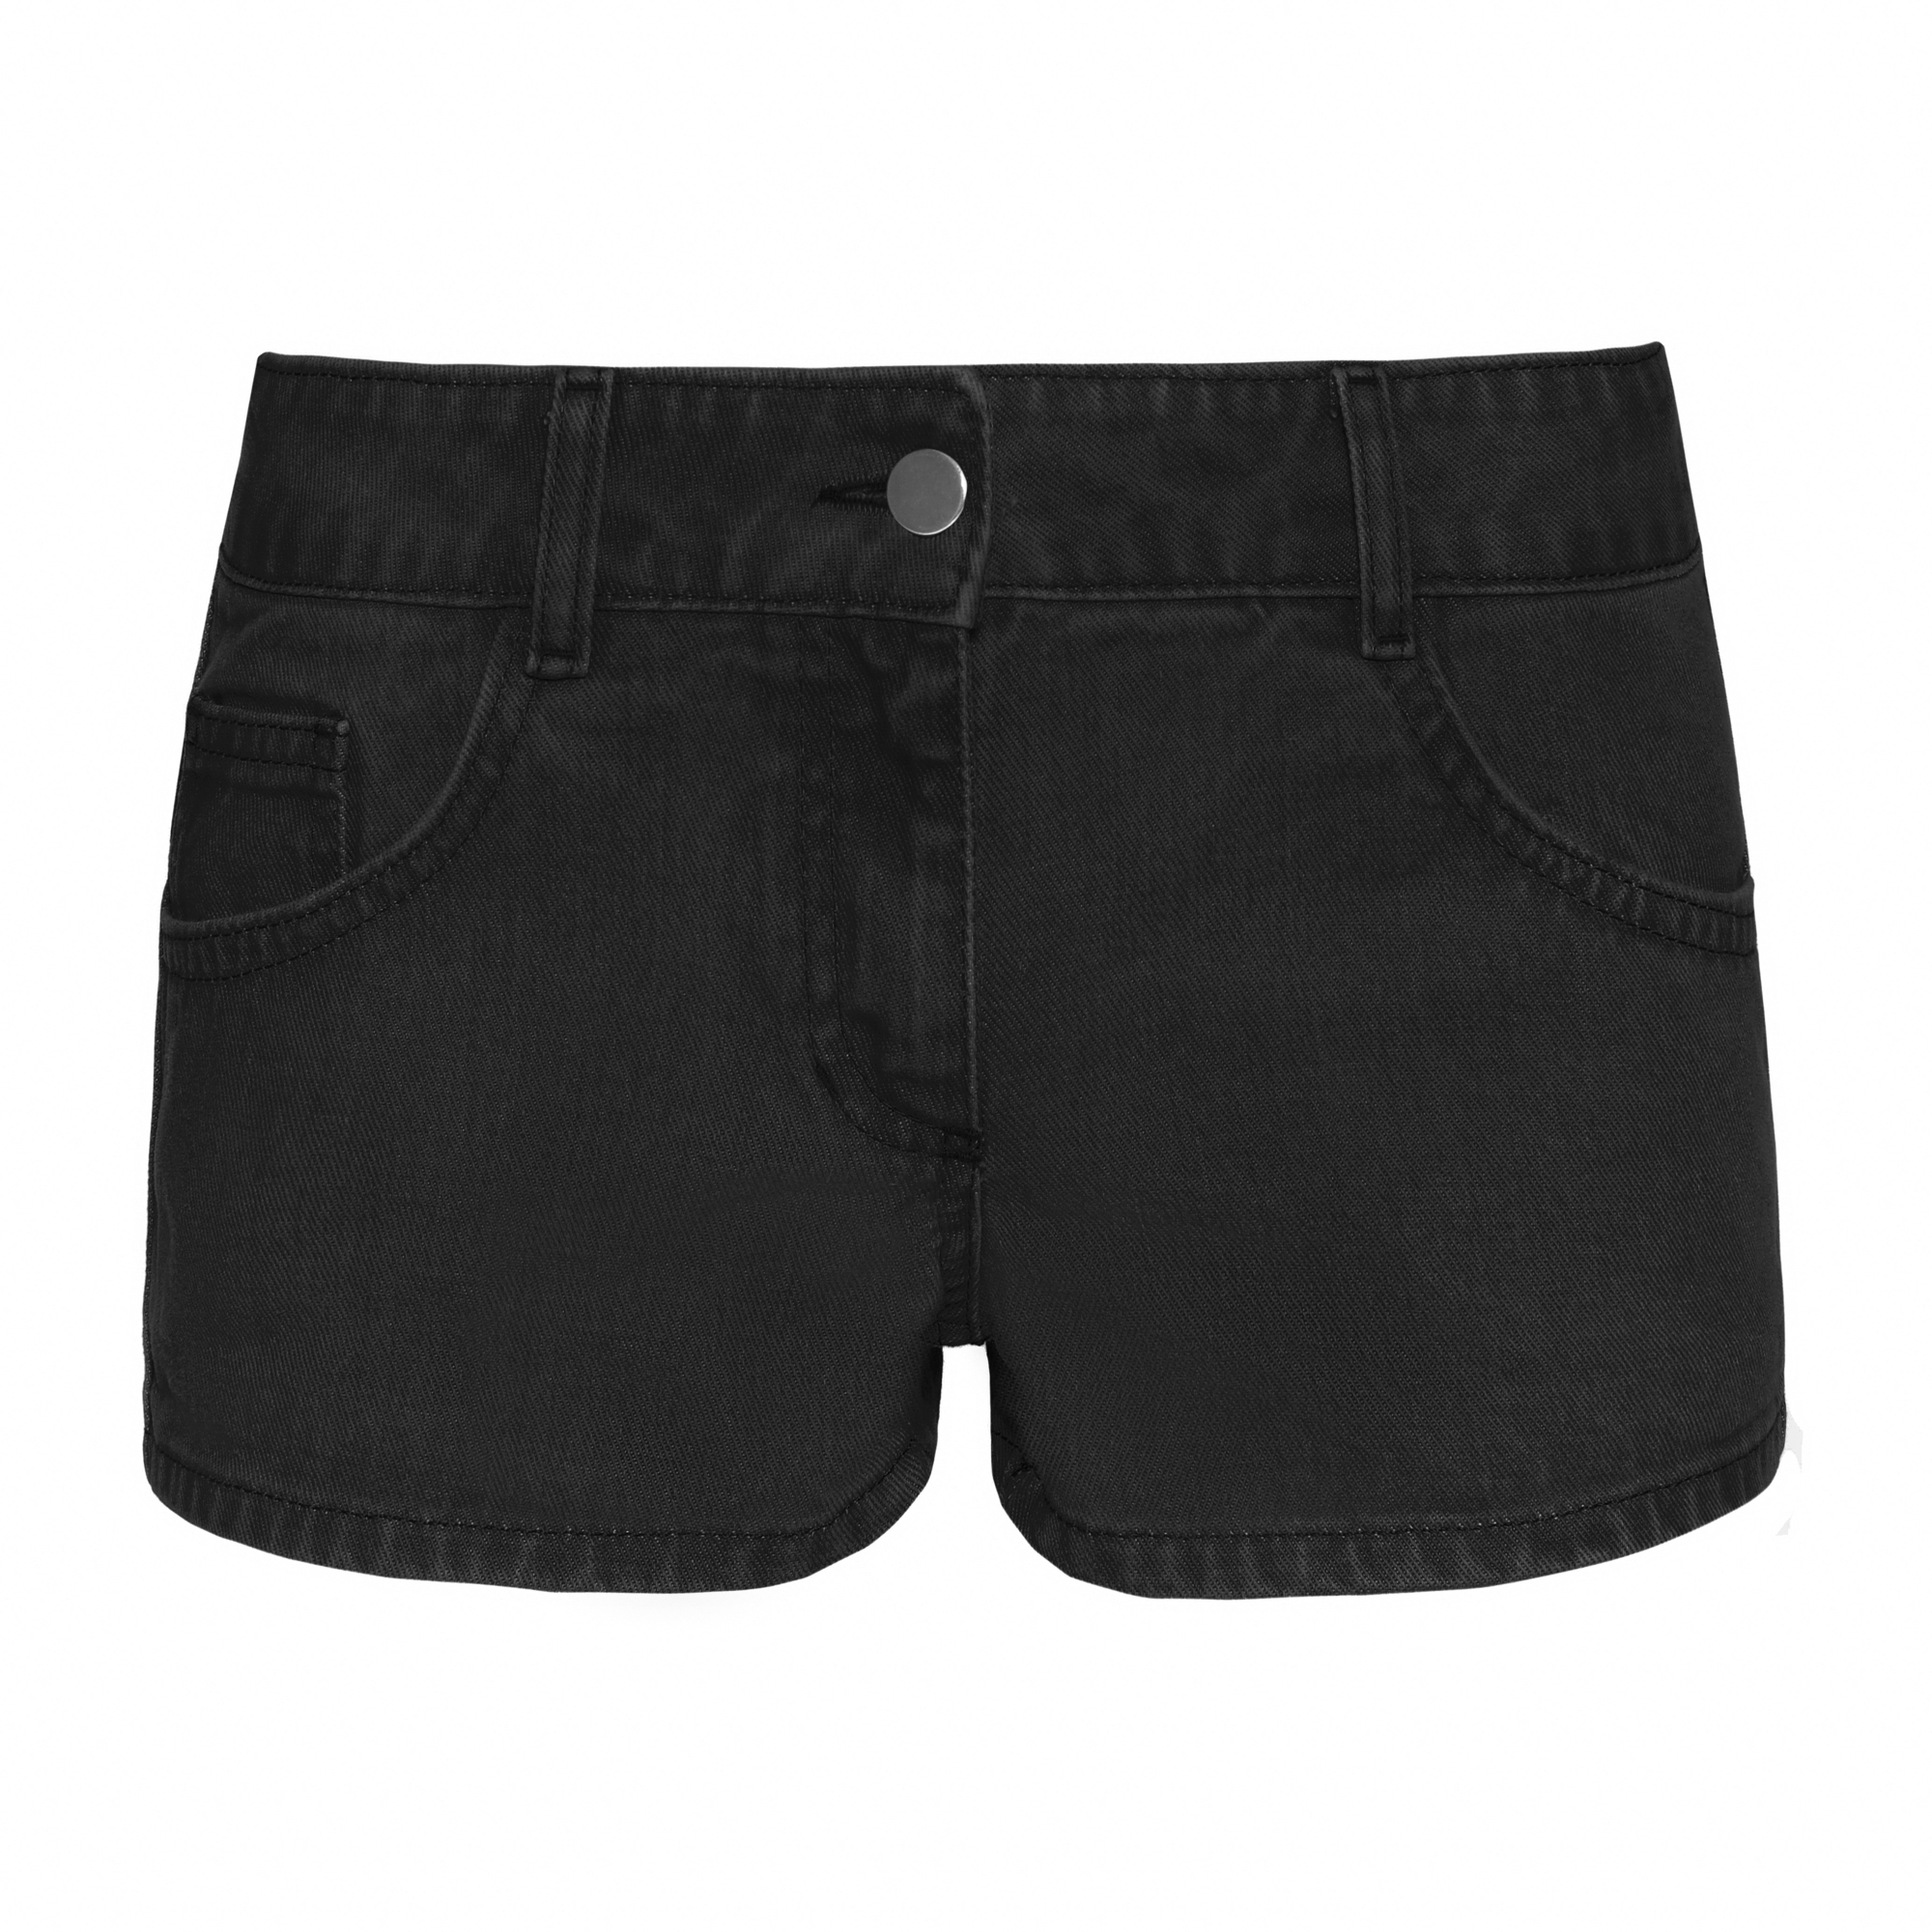 Buy Ladies Denim Shorts- Cotton HOT Denim Girls Shorts - Ladies Black Shorts  (30) at Amazon.in